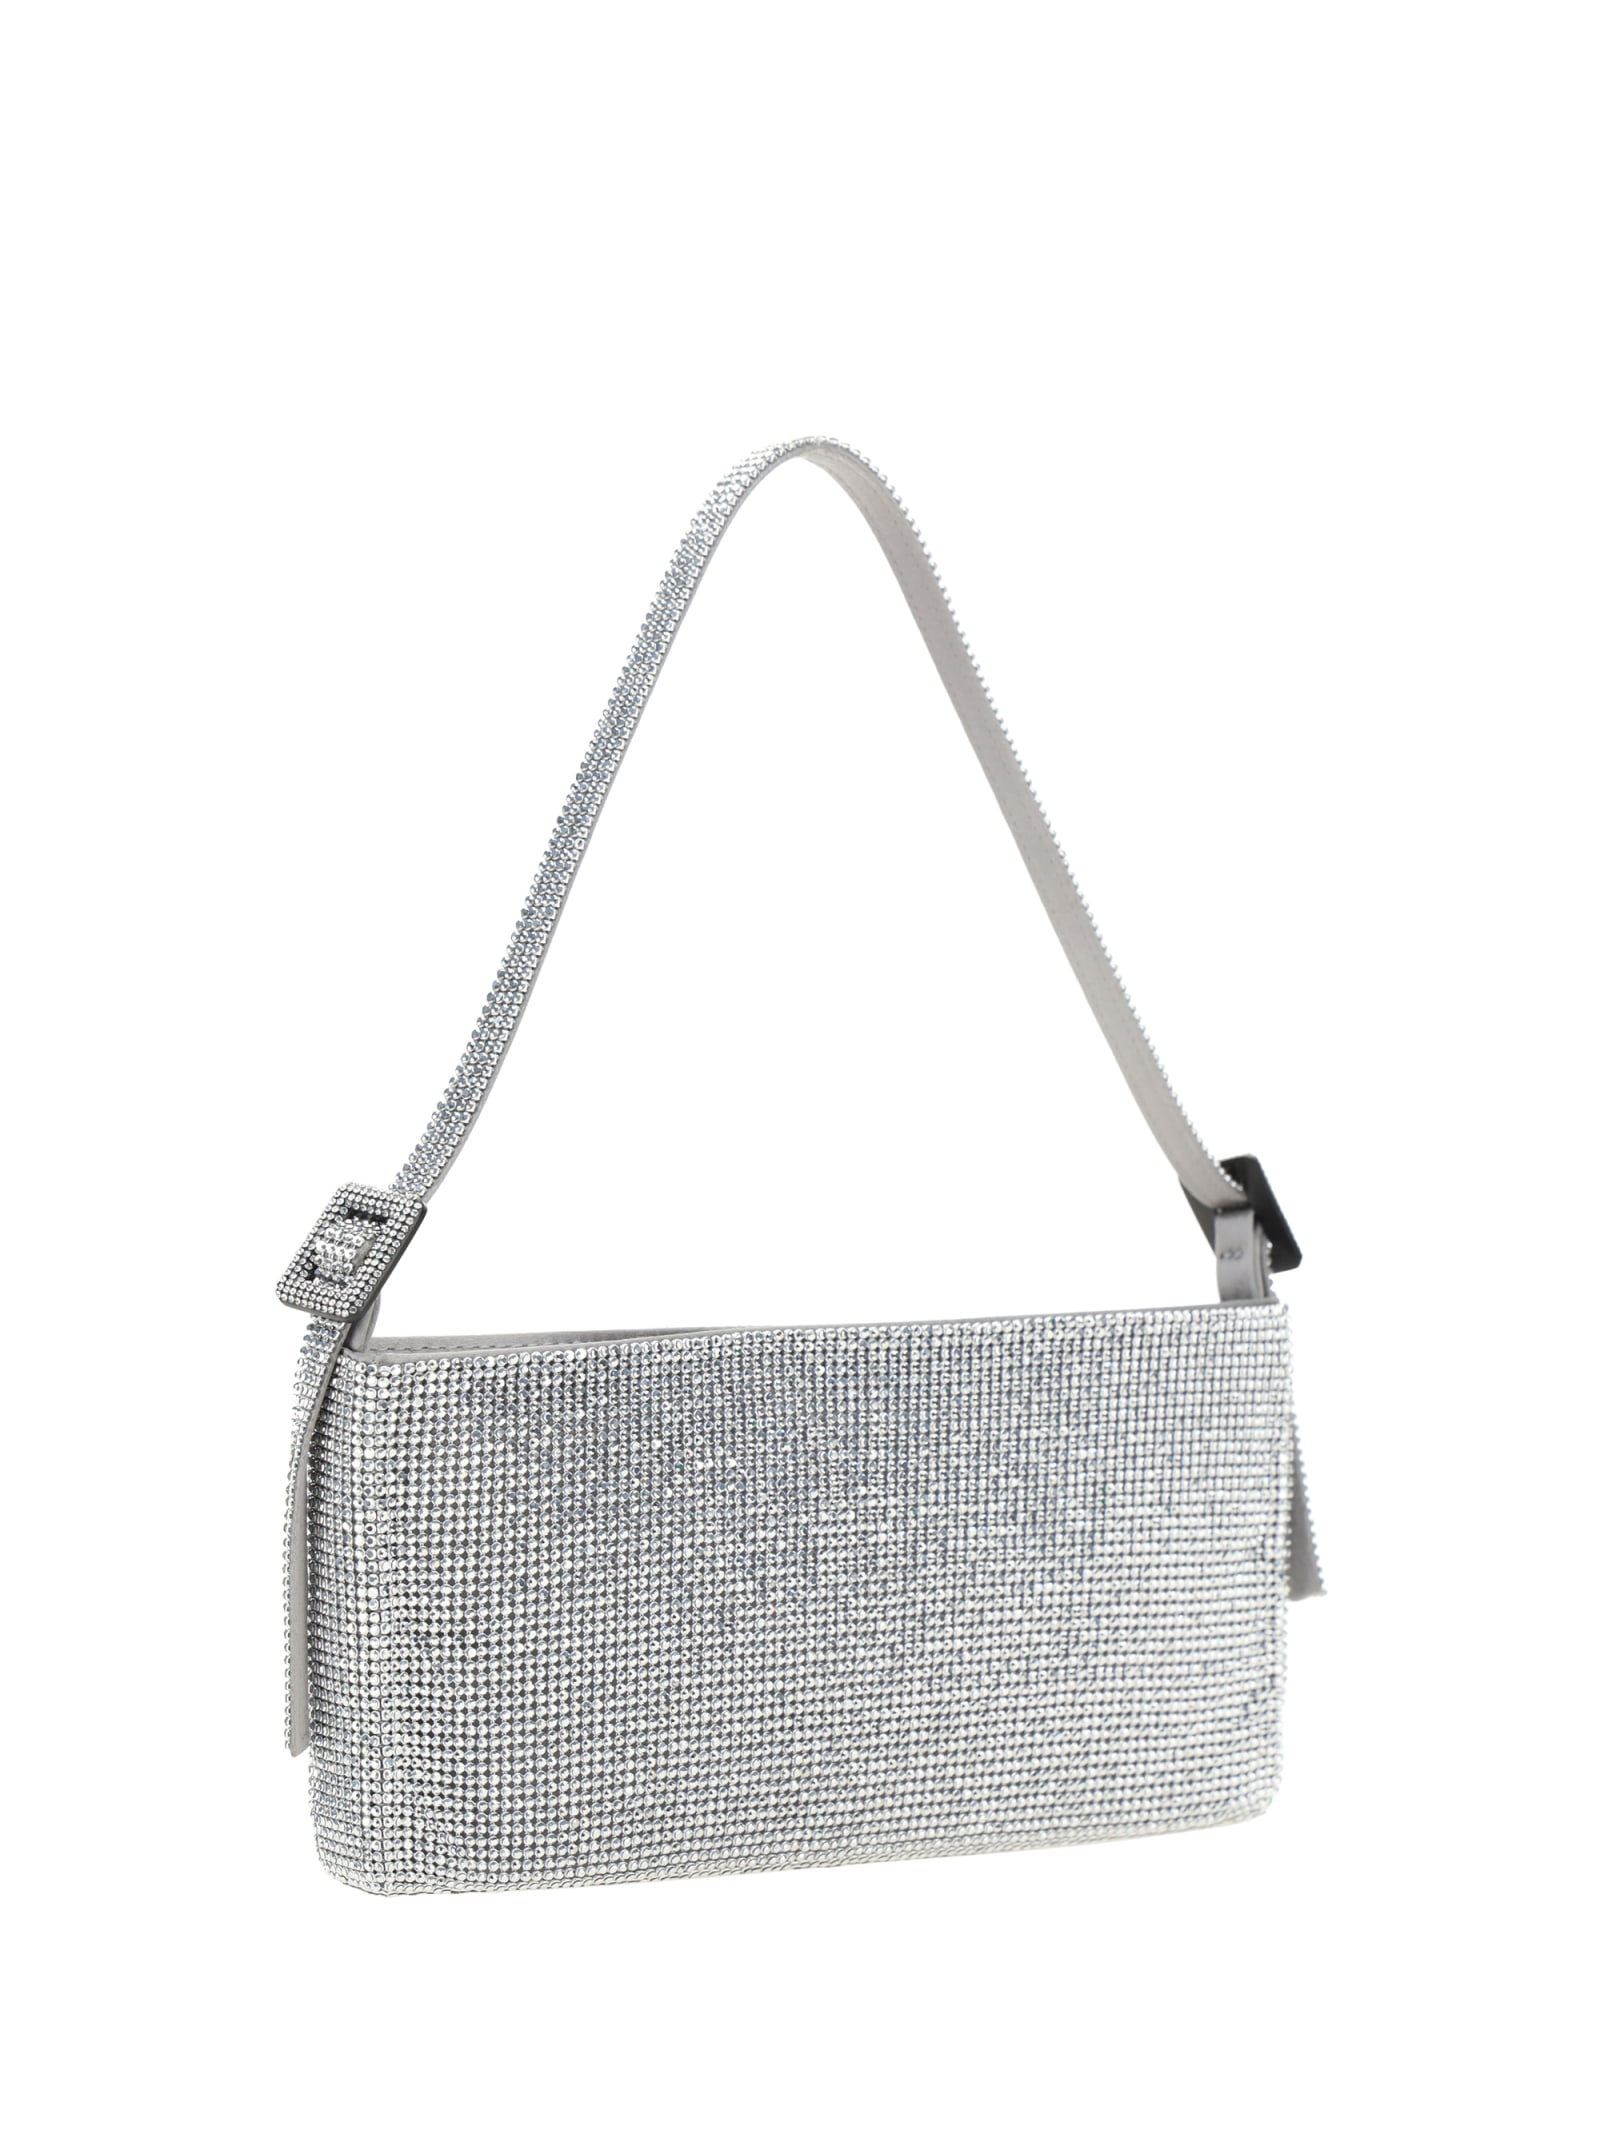 Shop Benedetta Bruzziches Handbag In Silver